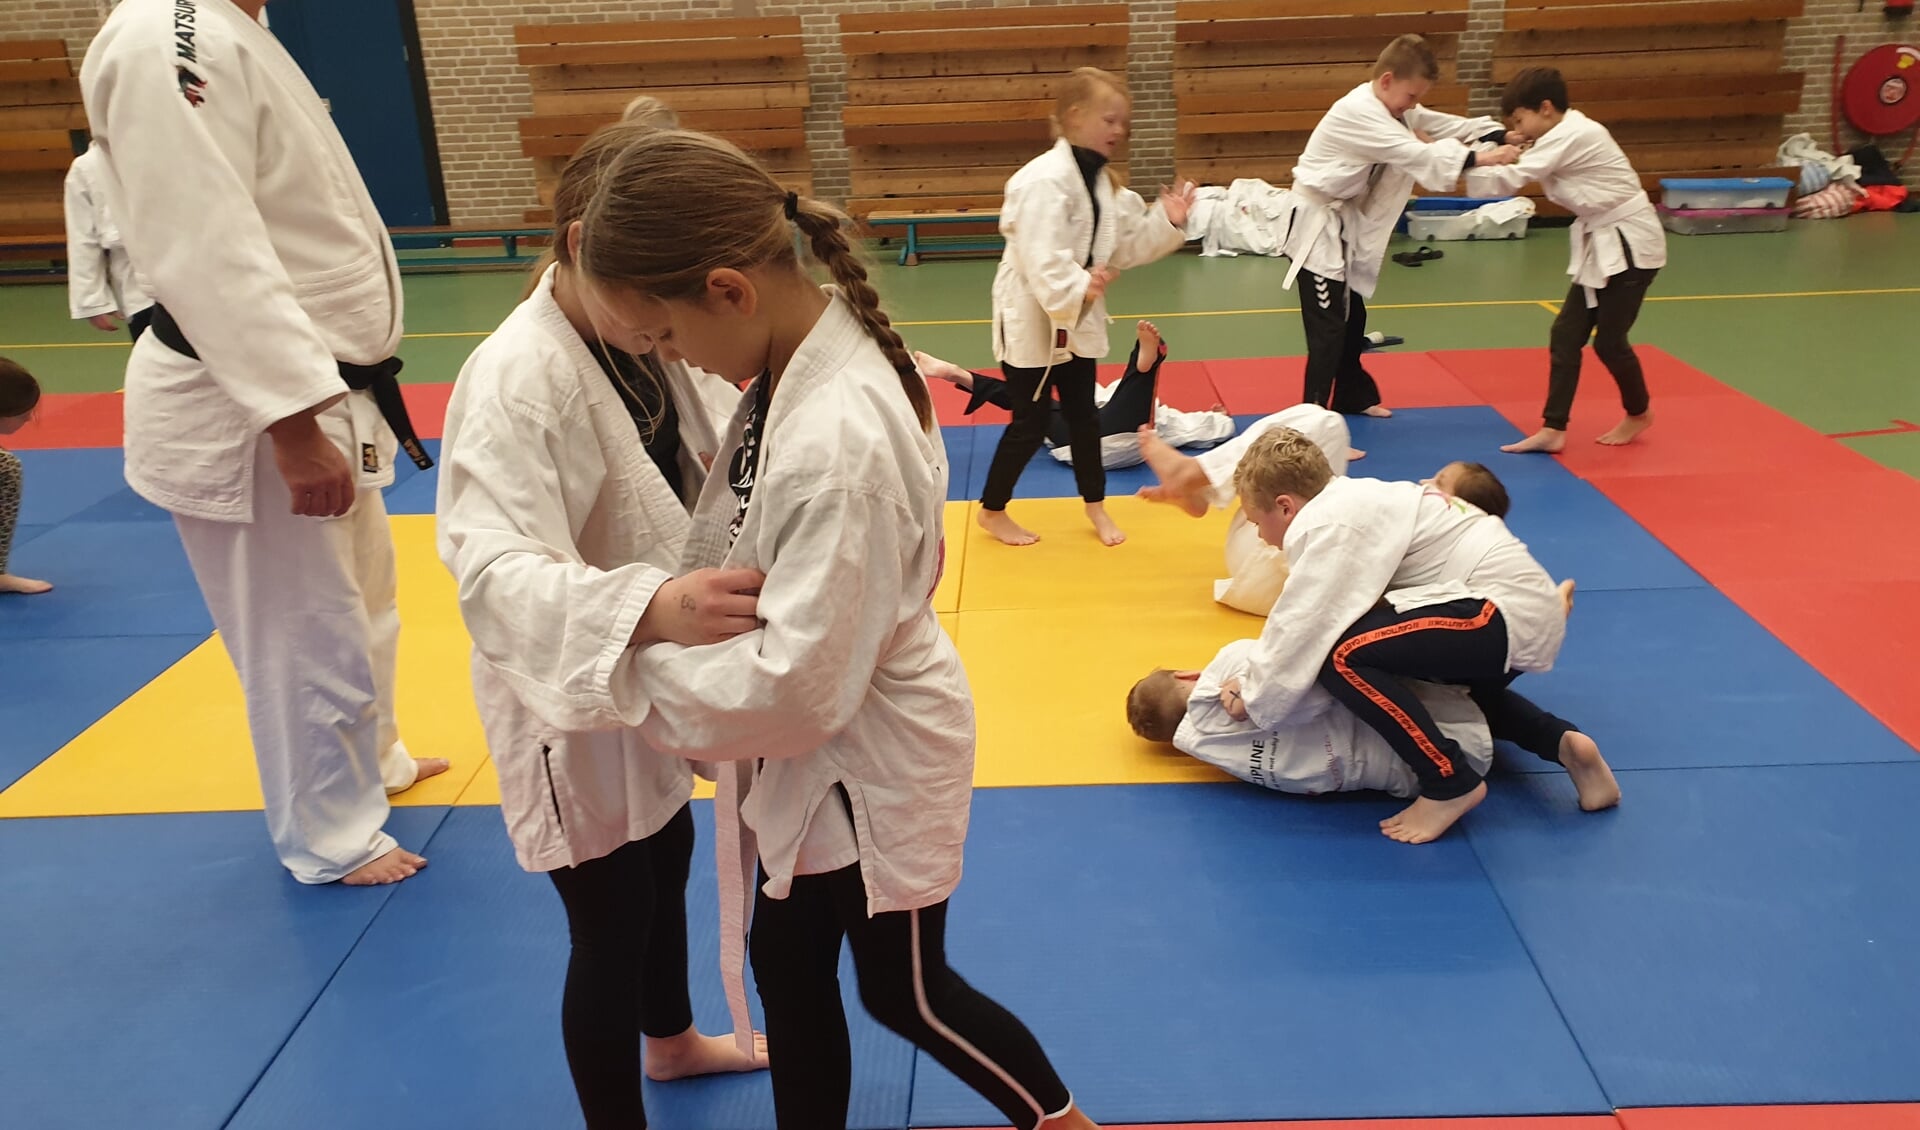 Kennismaken met judo via Sportintro in Neede. Foto: PR